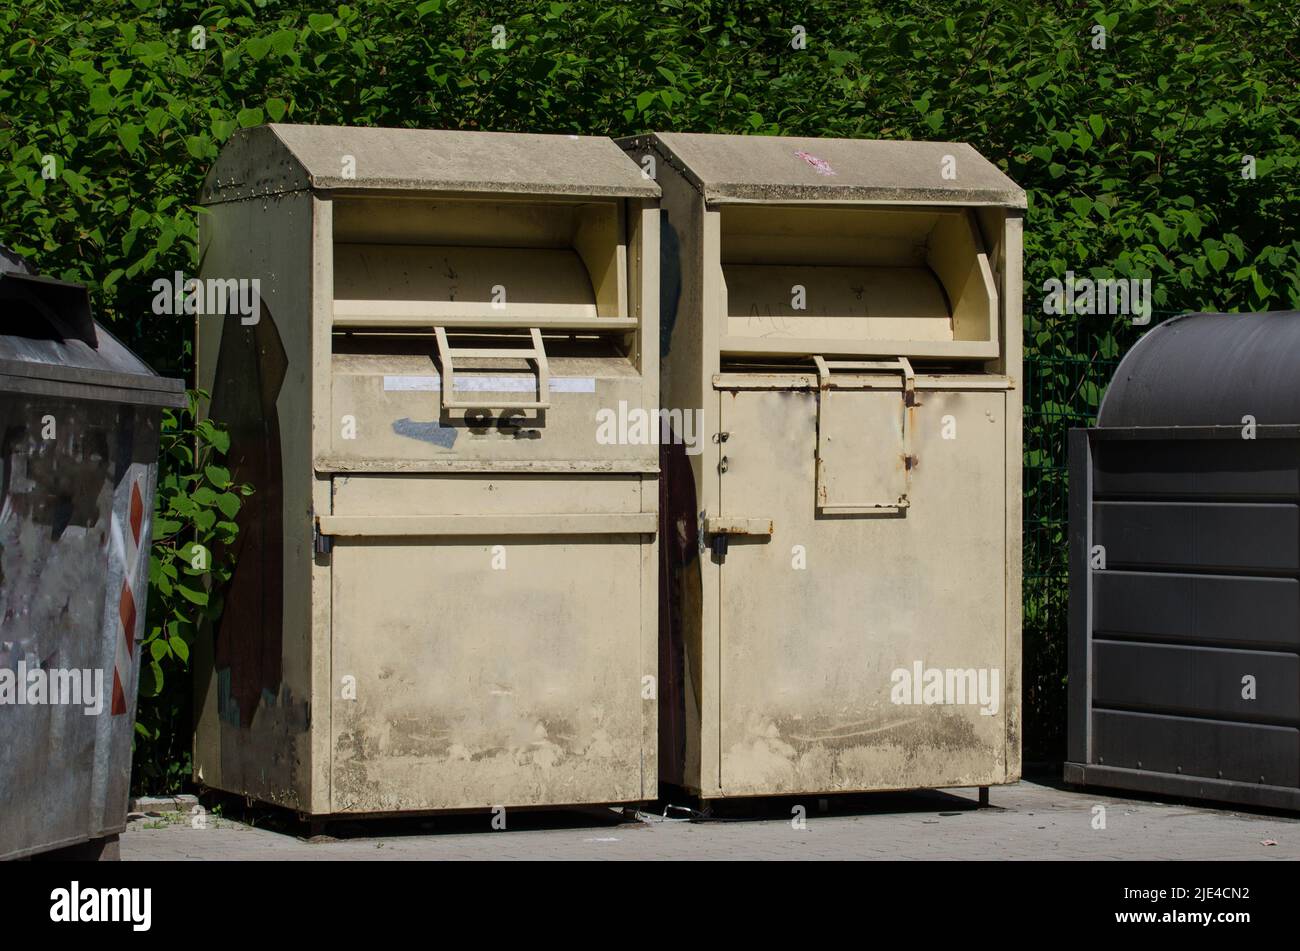 Zwei schmutzige Sammelbehälter / Kleiderbanken für die Sammlung alter und gebrauchter Kleidung und Schuhe stehen an einer Recyclingstelle Stockfoto